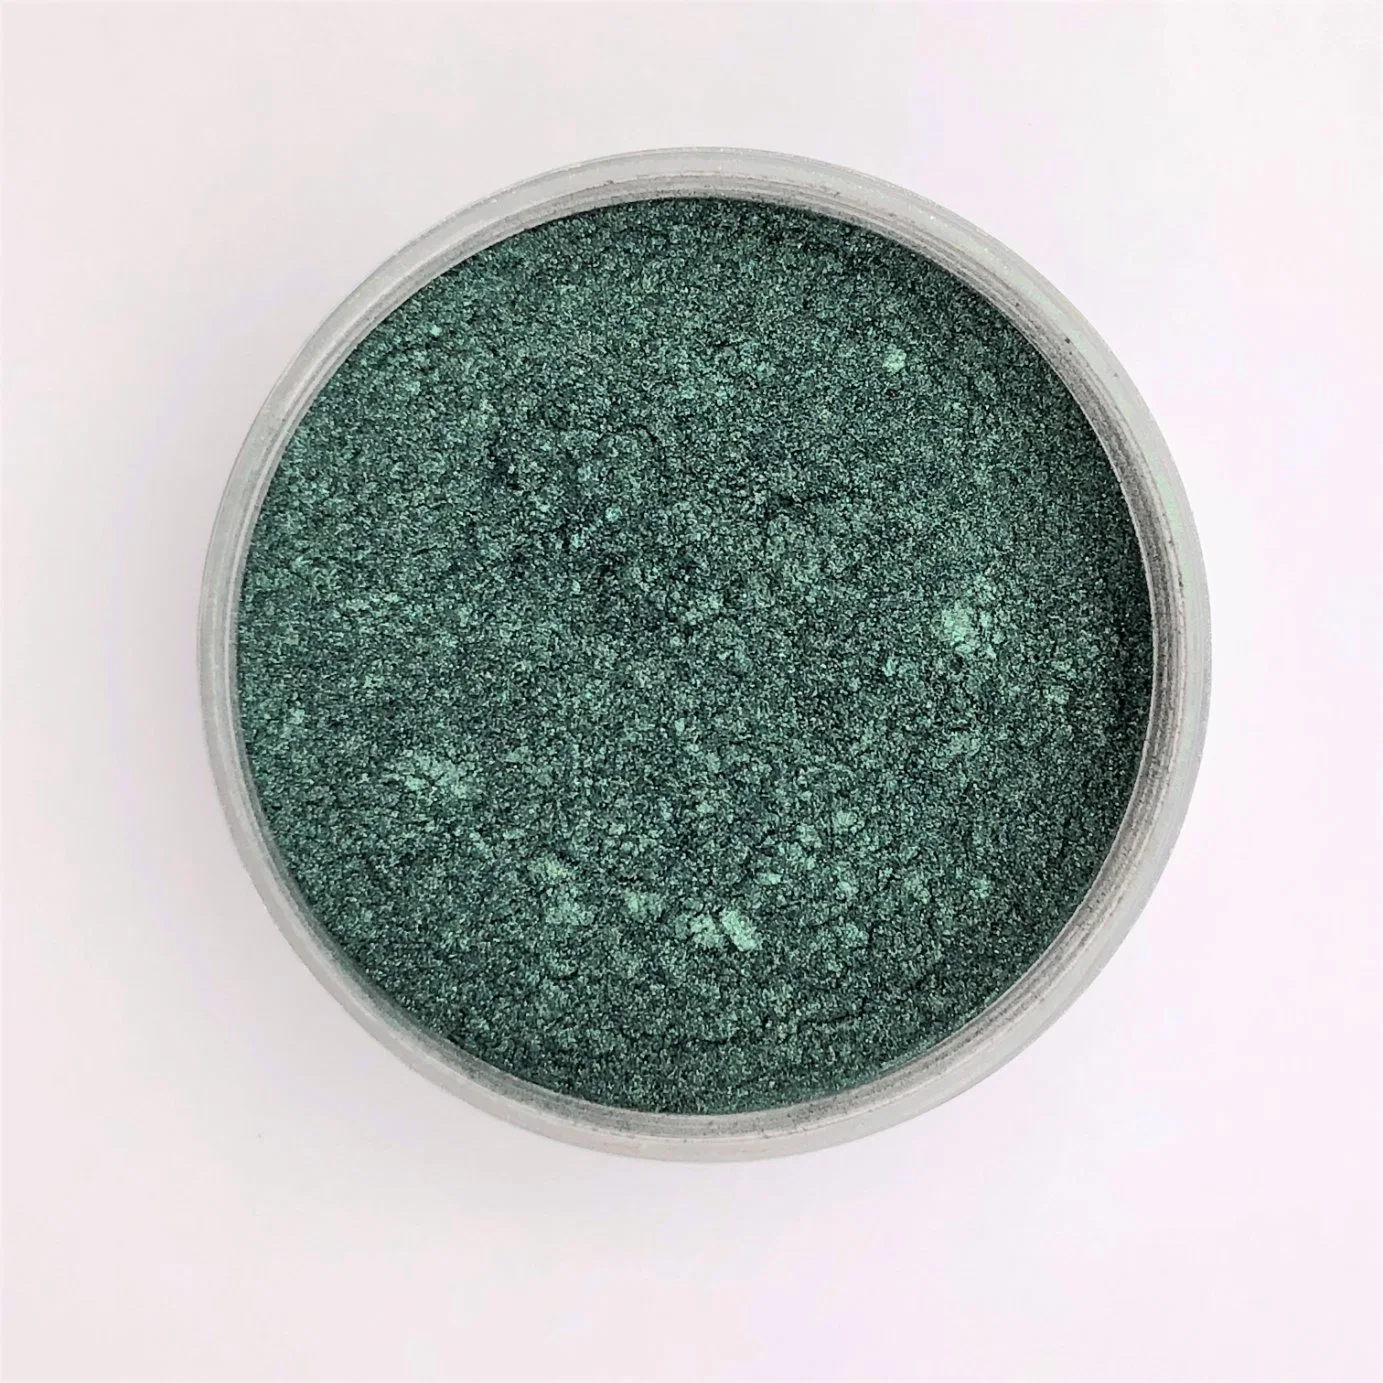 Glimmer schwarz Grün Kunststoff Glimmer Pulver P408 Perlmuttpigmente Beschichtung Kosmetik